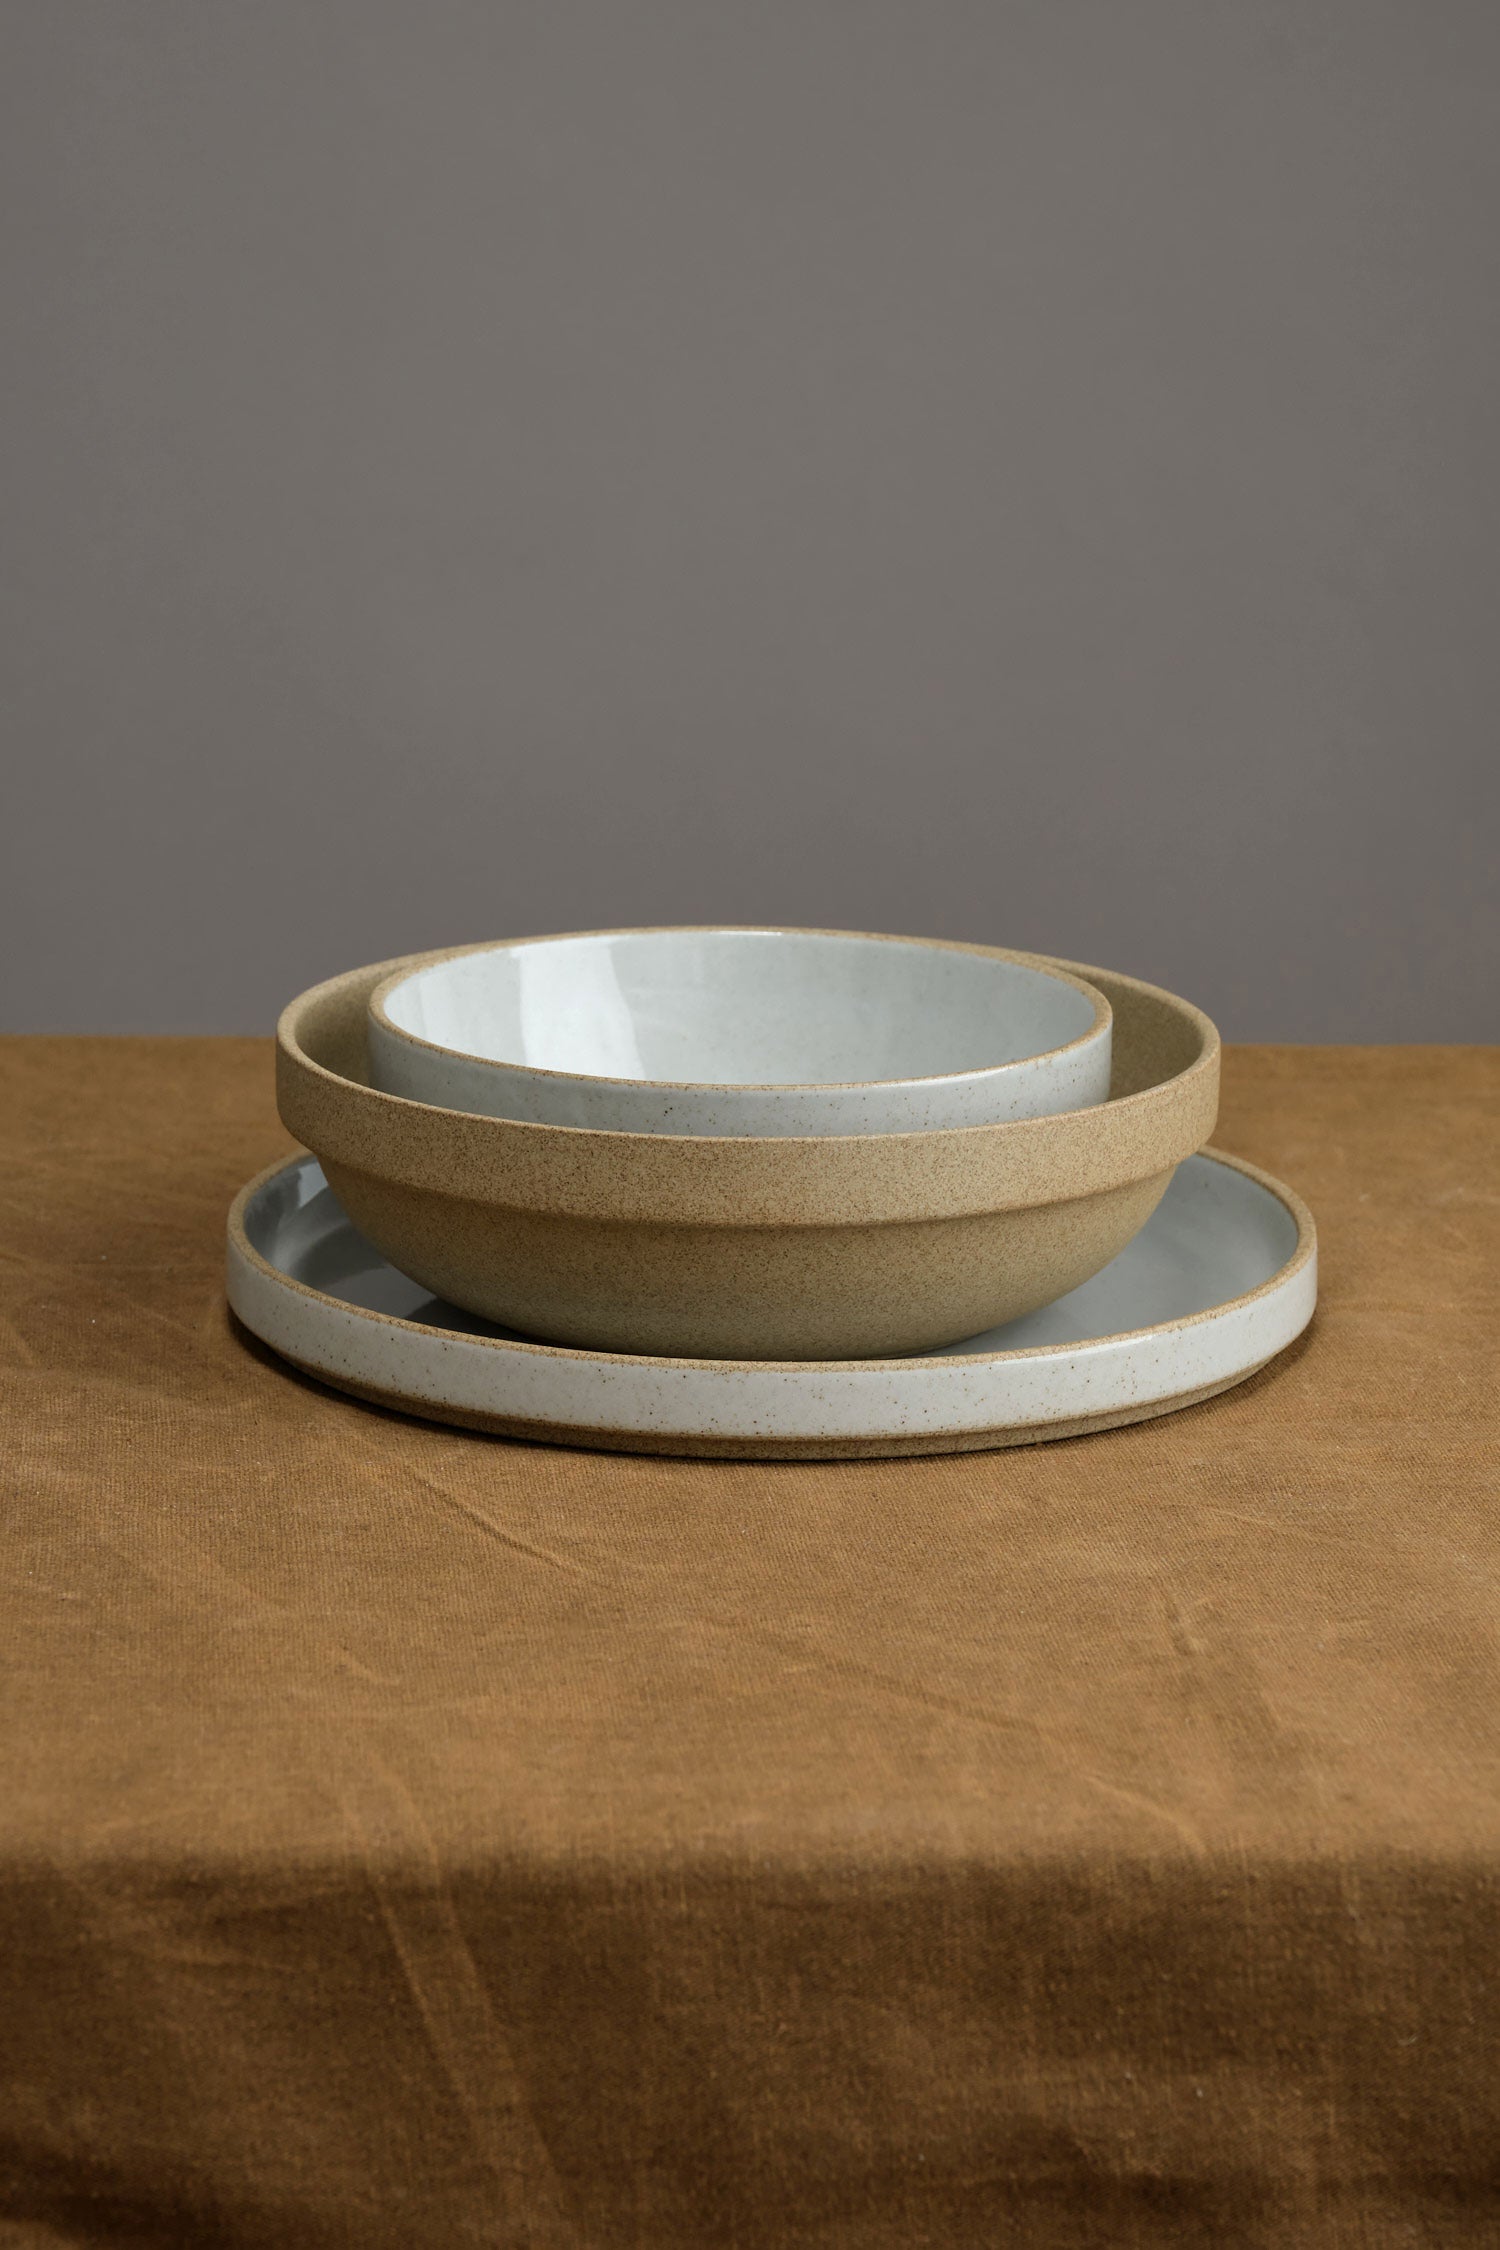 Stacked Hasami bowls